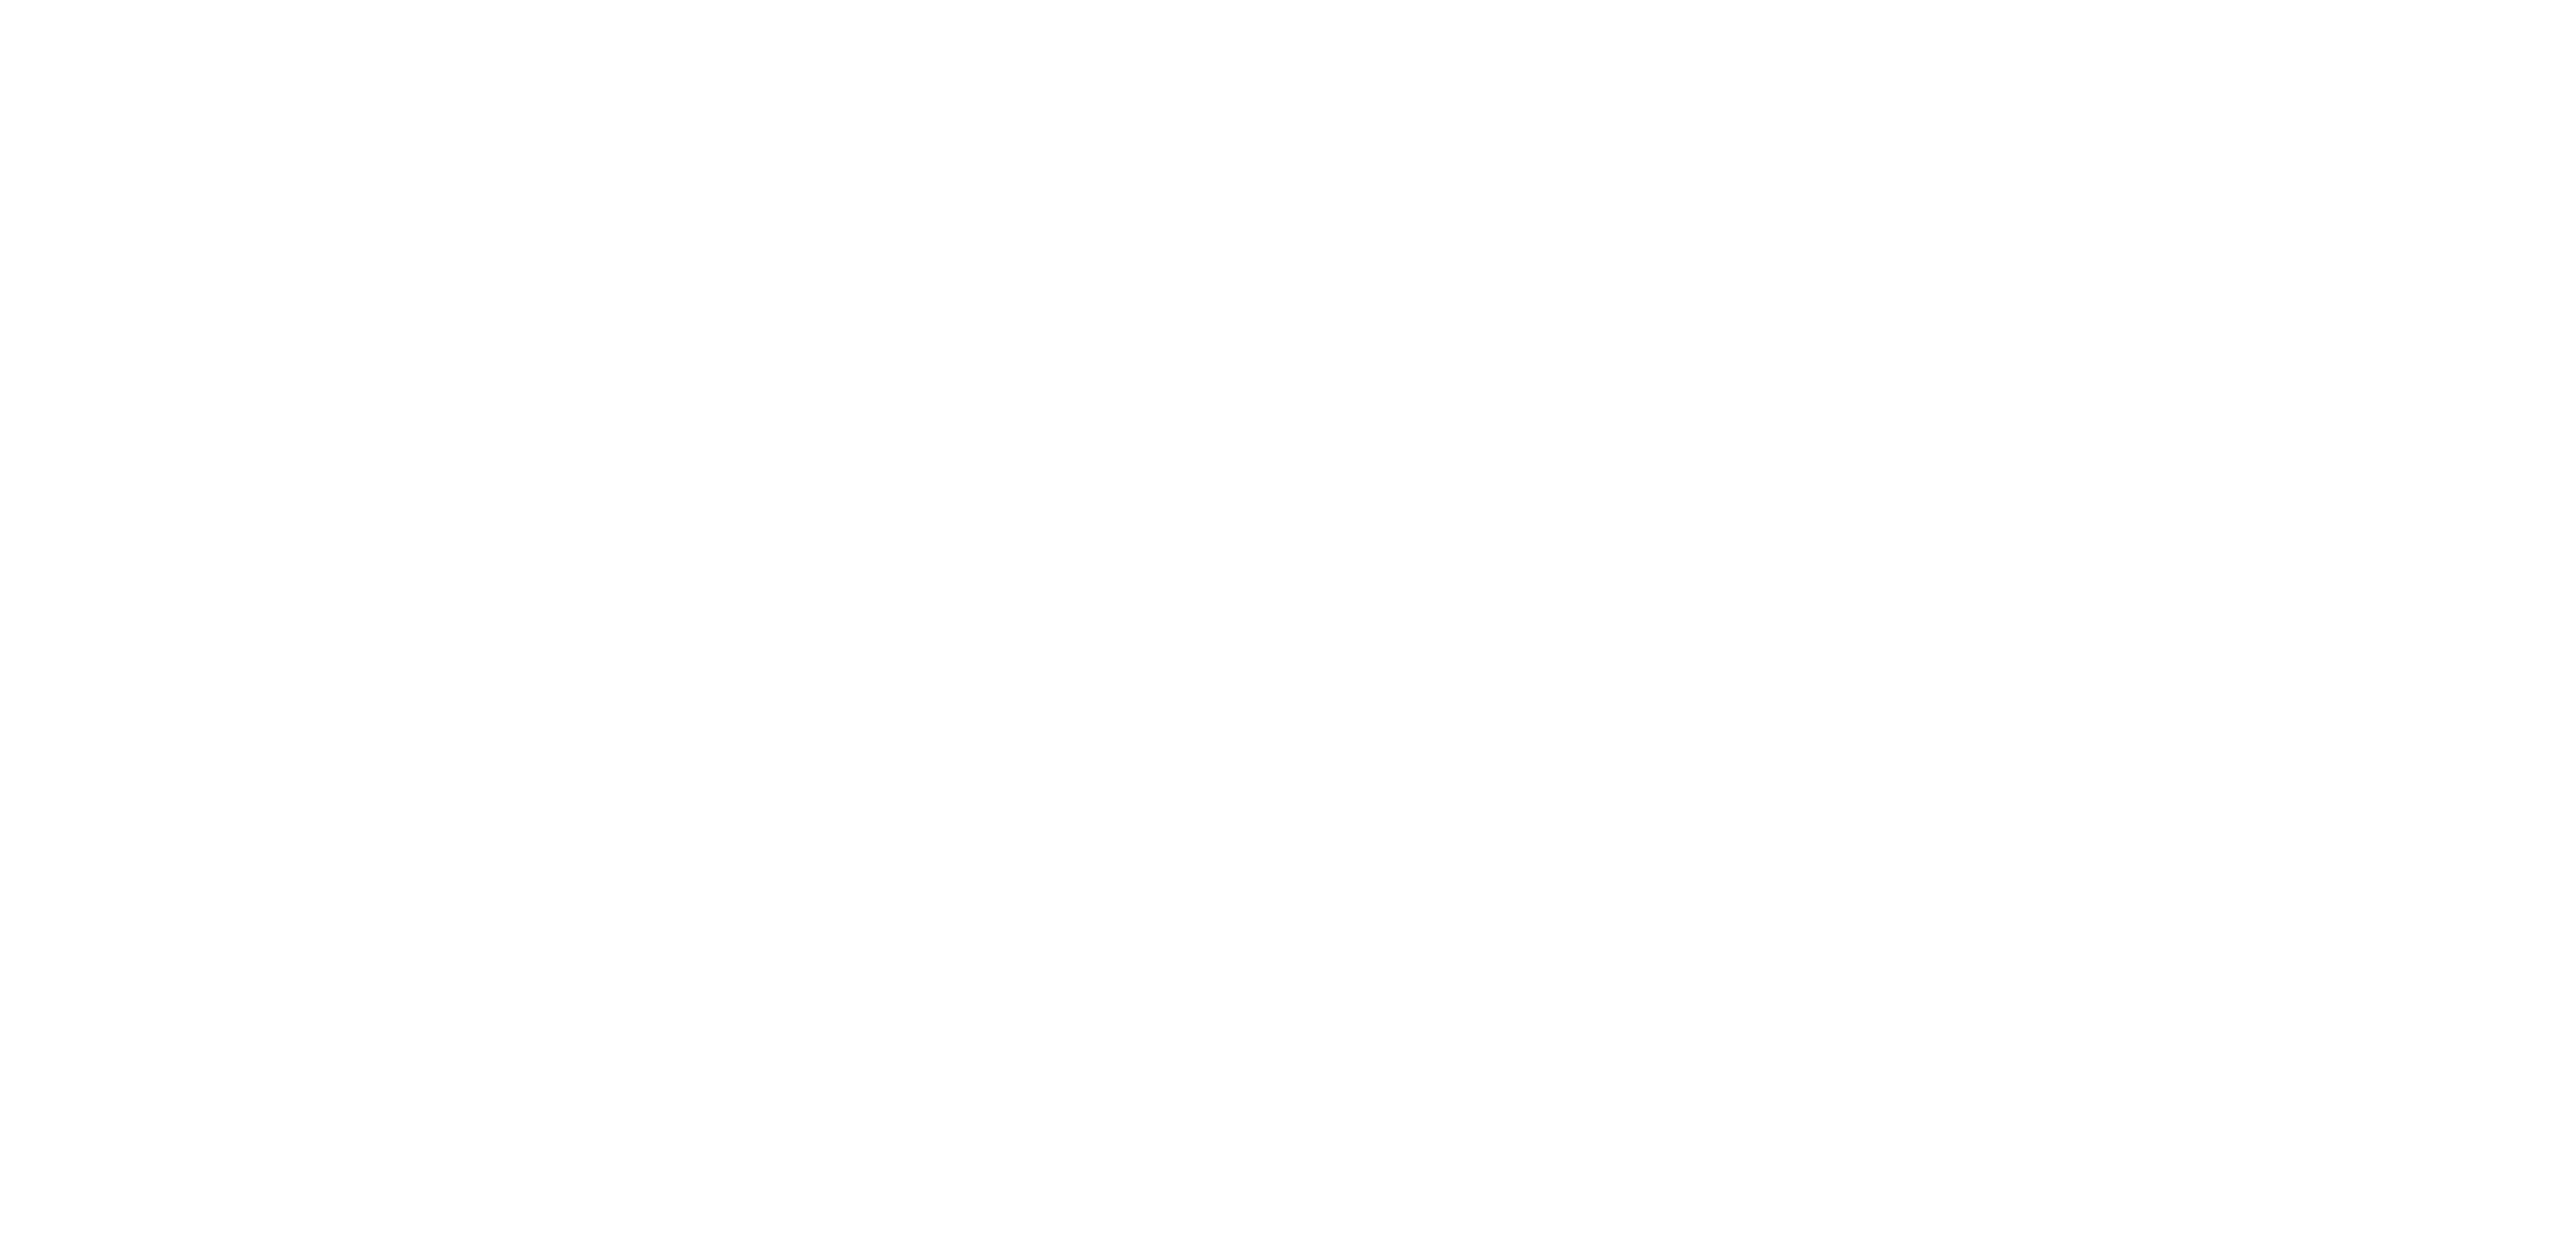 Drawn Together logo